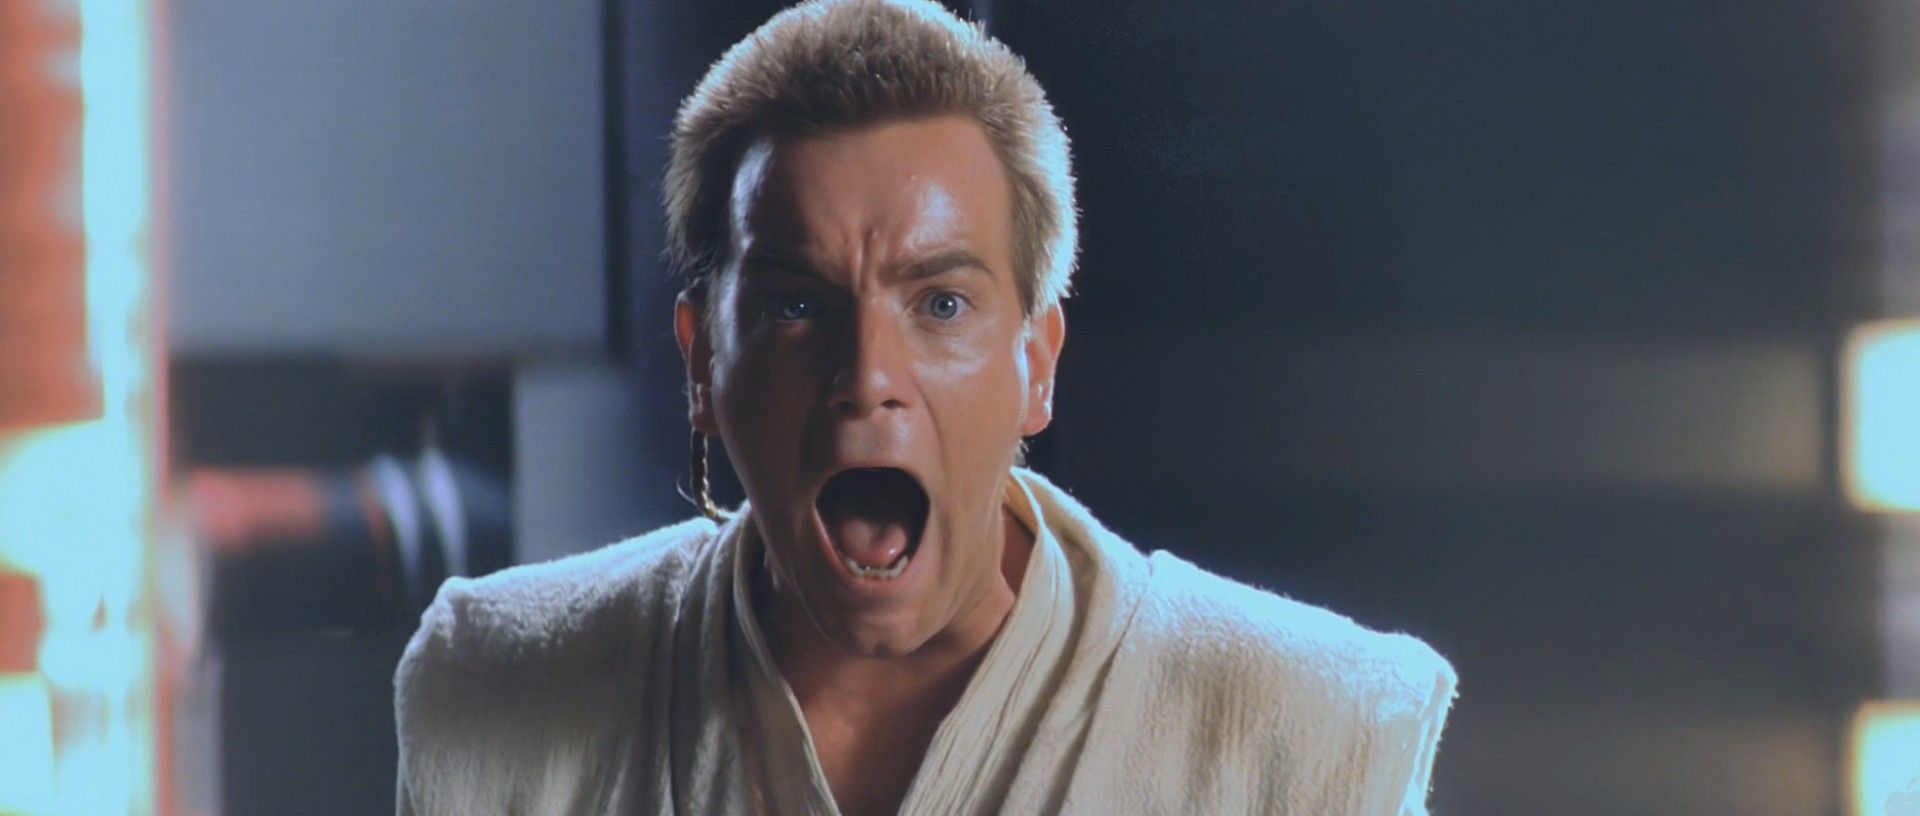 Юън Макгрегър като Оби-Уан в "Междузвездни войни"